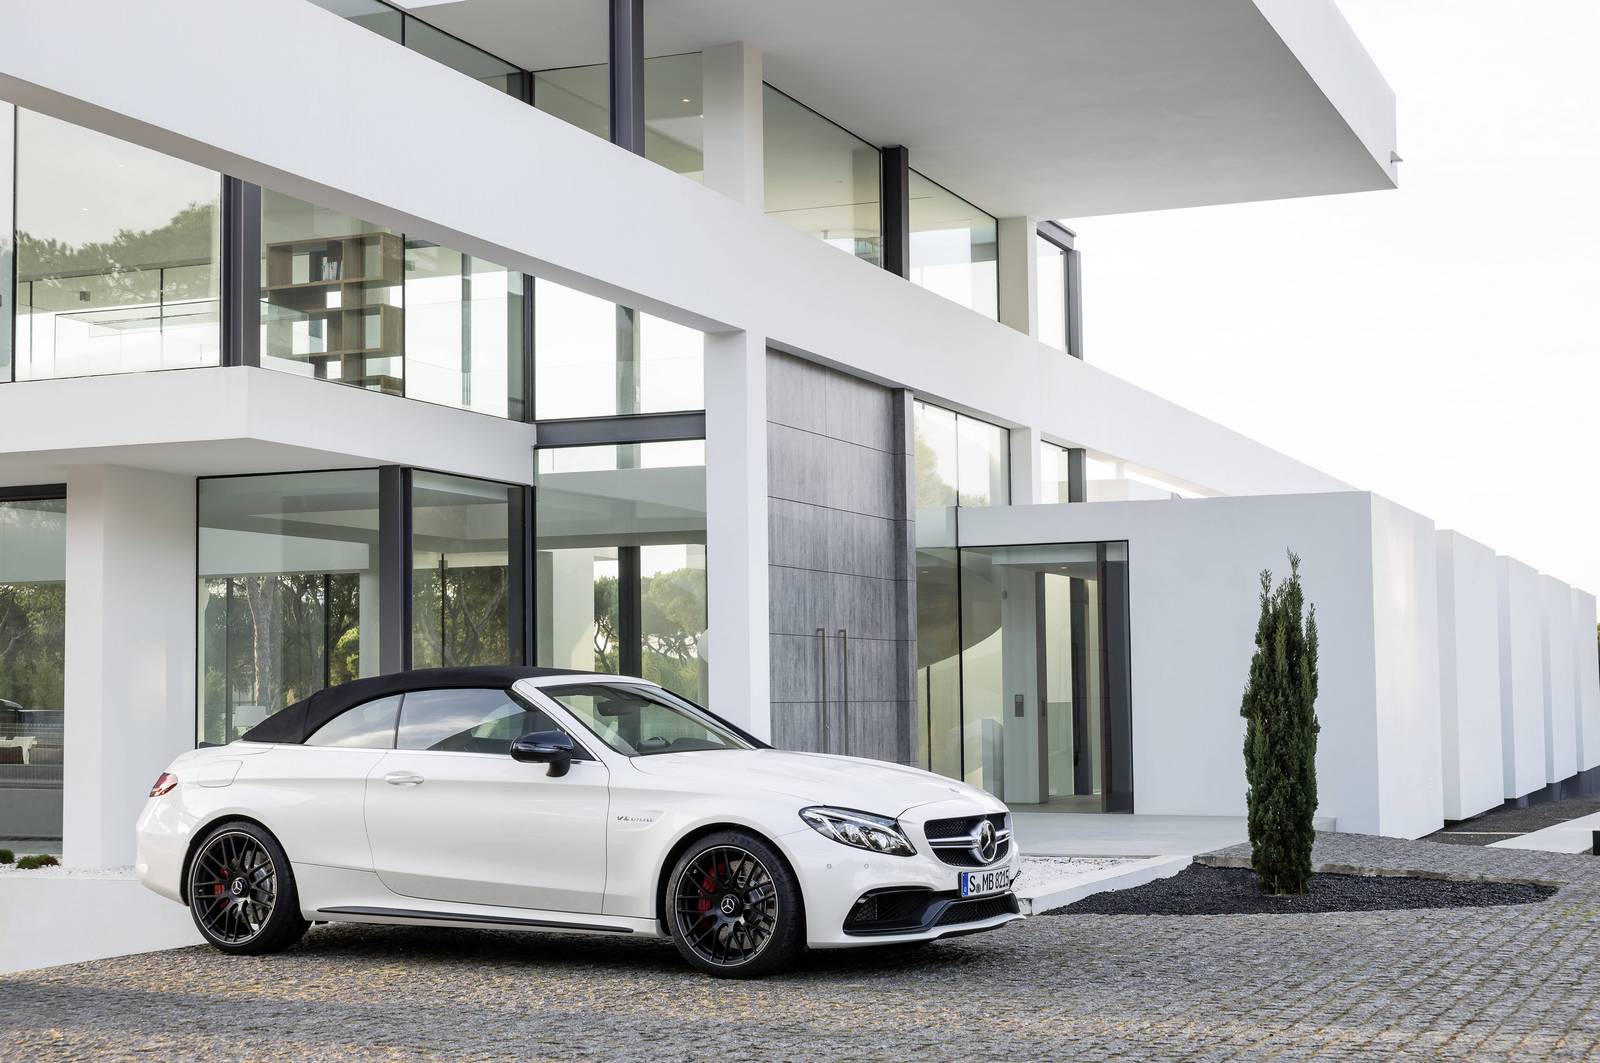 Поставки Mercedes-Benz были рекордными в марте 2016 года